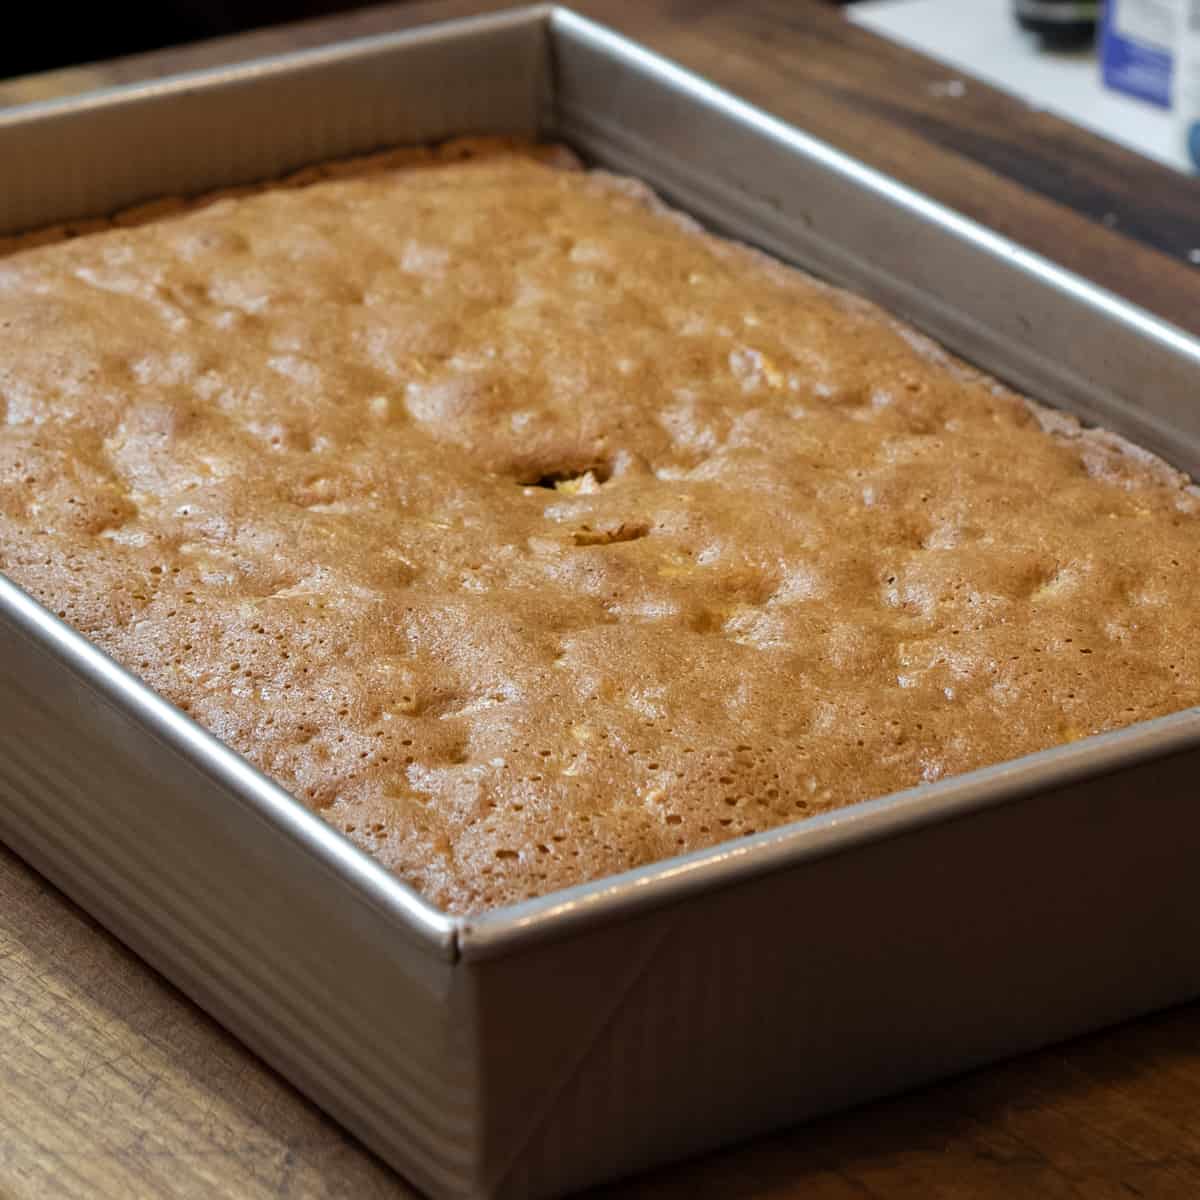 Baked cake in a rectangular metal dish.